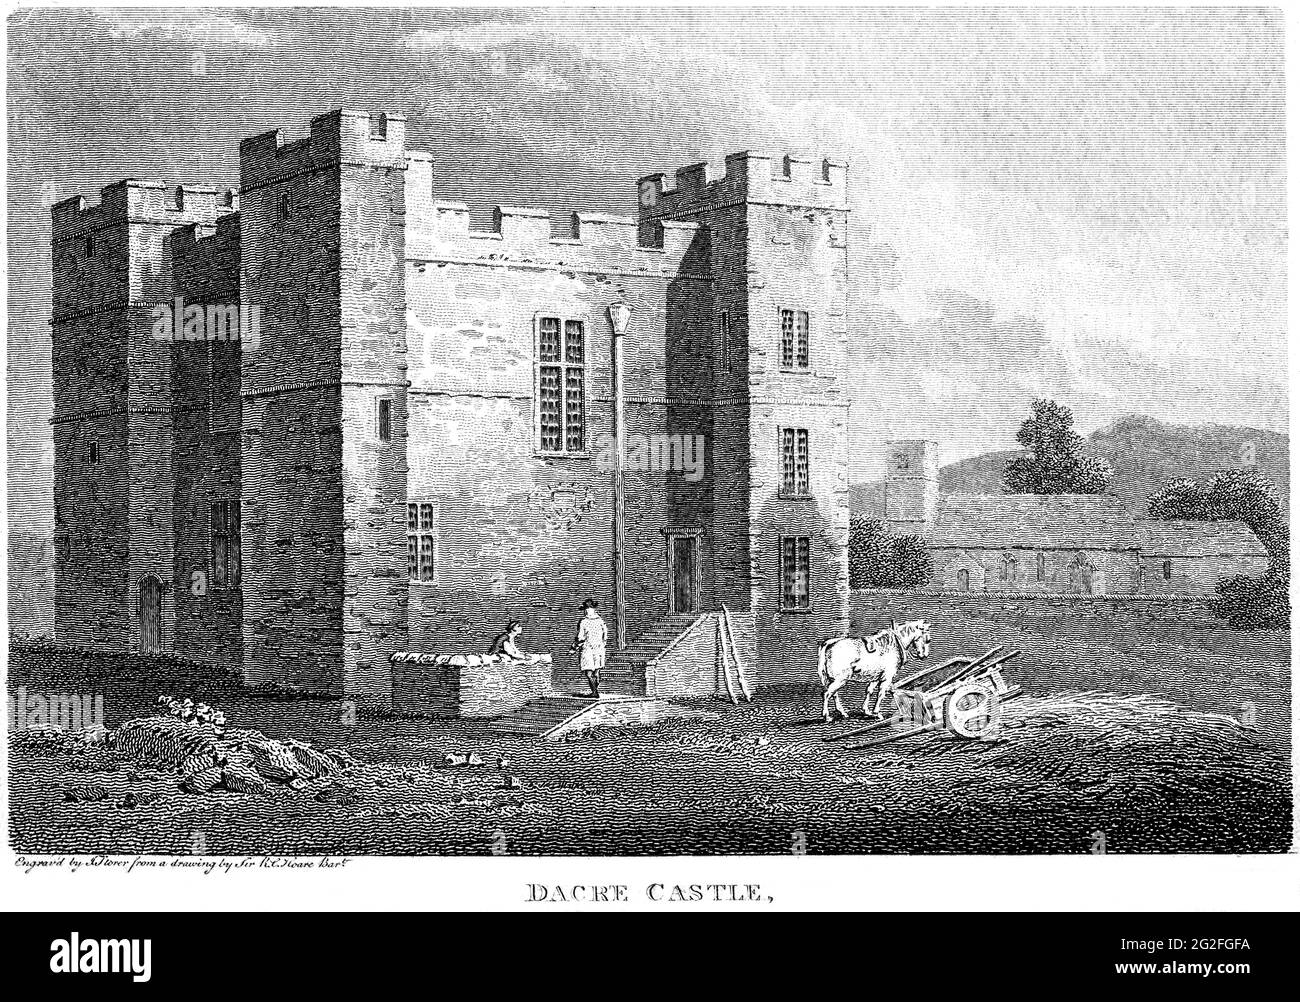 Eine Gravur von Dacre Castle, Cumberland, gescannt in hoher Auflösung aus einem Buch, das 1812 gedruckt wurde. Dieses Bild wird angenommen, dass es frei von allen historischen Polizisten ist Stockfoto